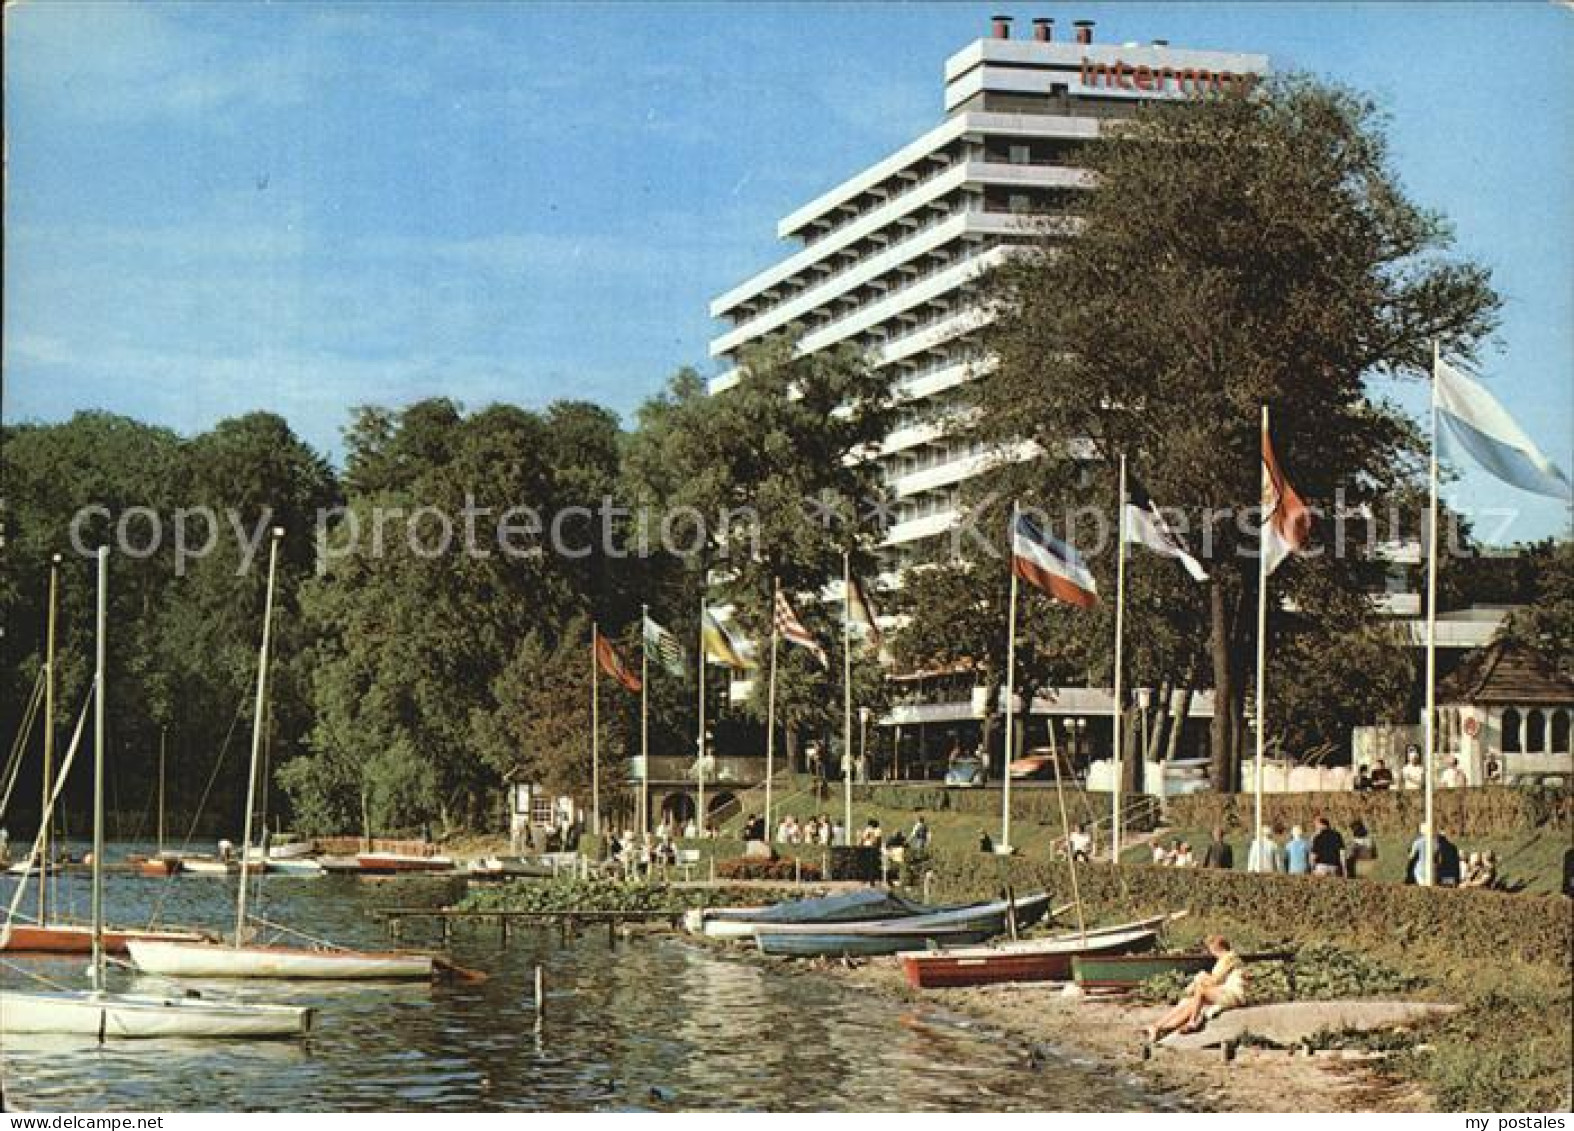 72592797 Malente-Gremsmuehlen Hotel Intermar Am Dieksee Uferpromenade Strand Seg - Malente-Gremsmuehlen